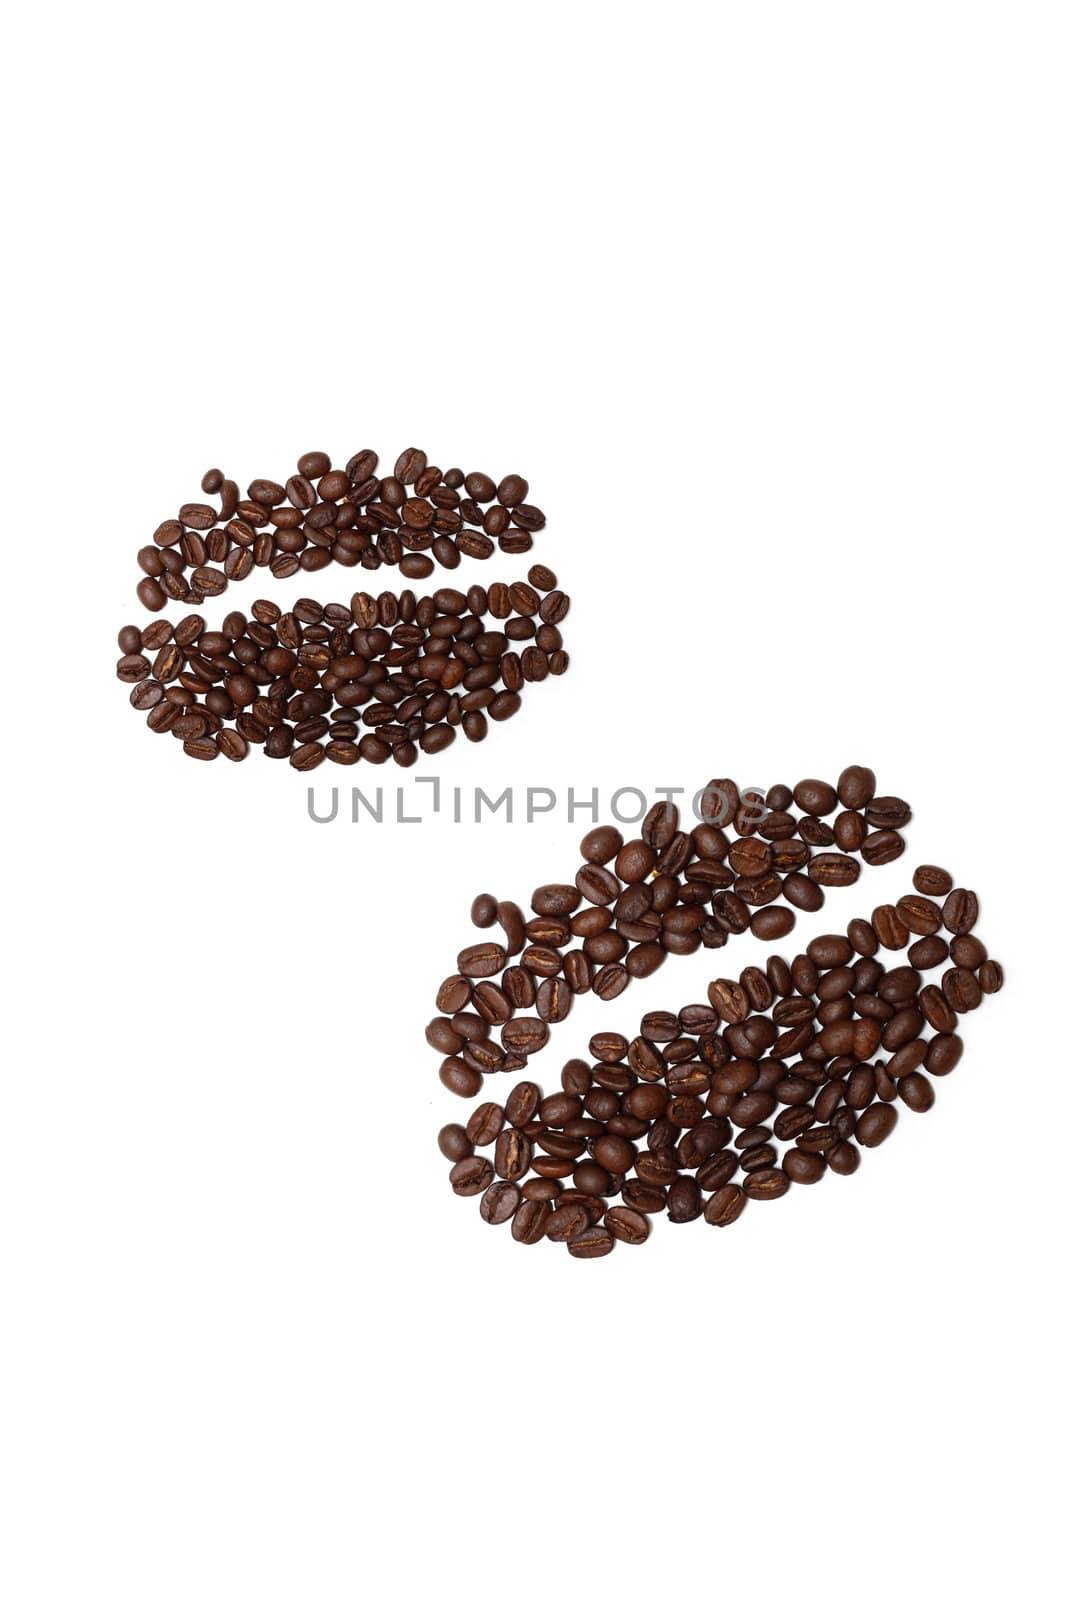 Coffee beans by leeser